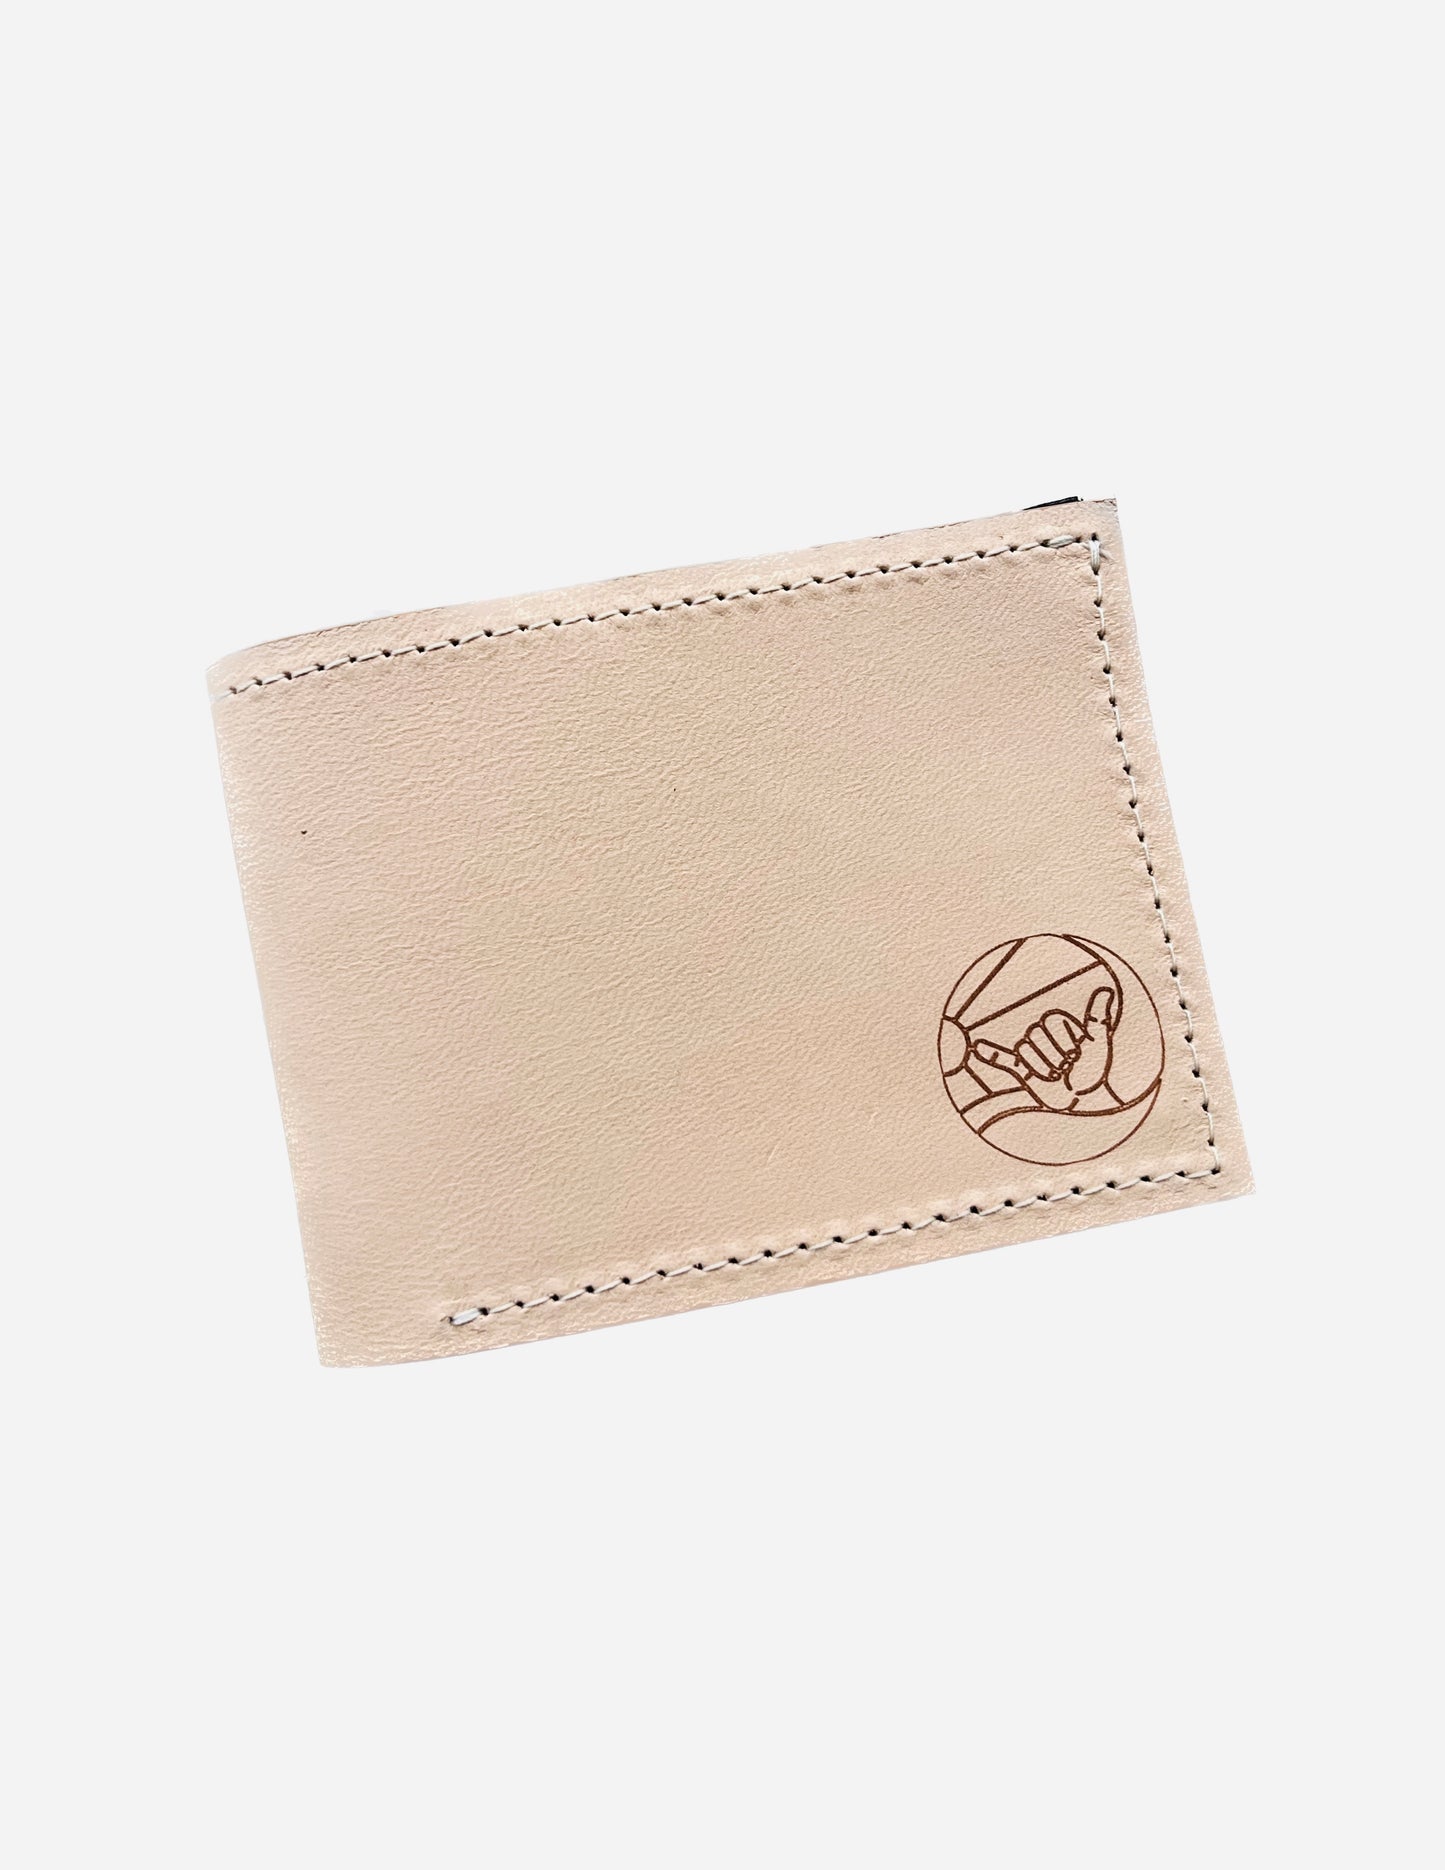 LIP Beige Leather Wallet